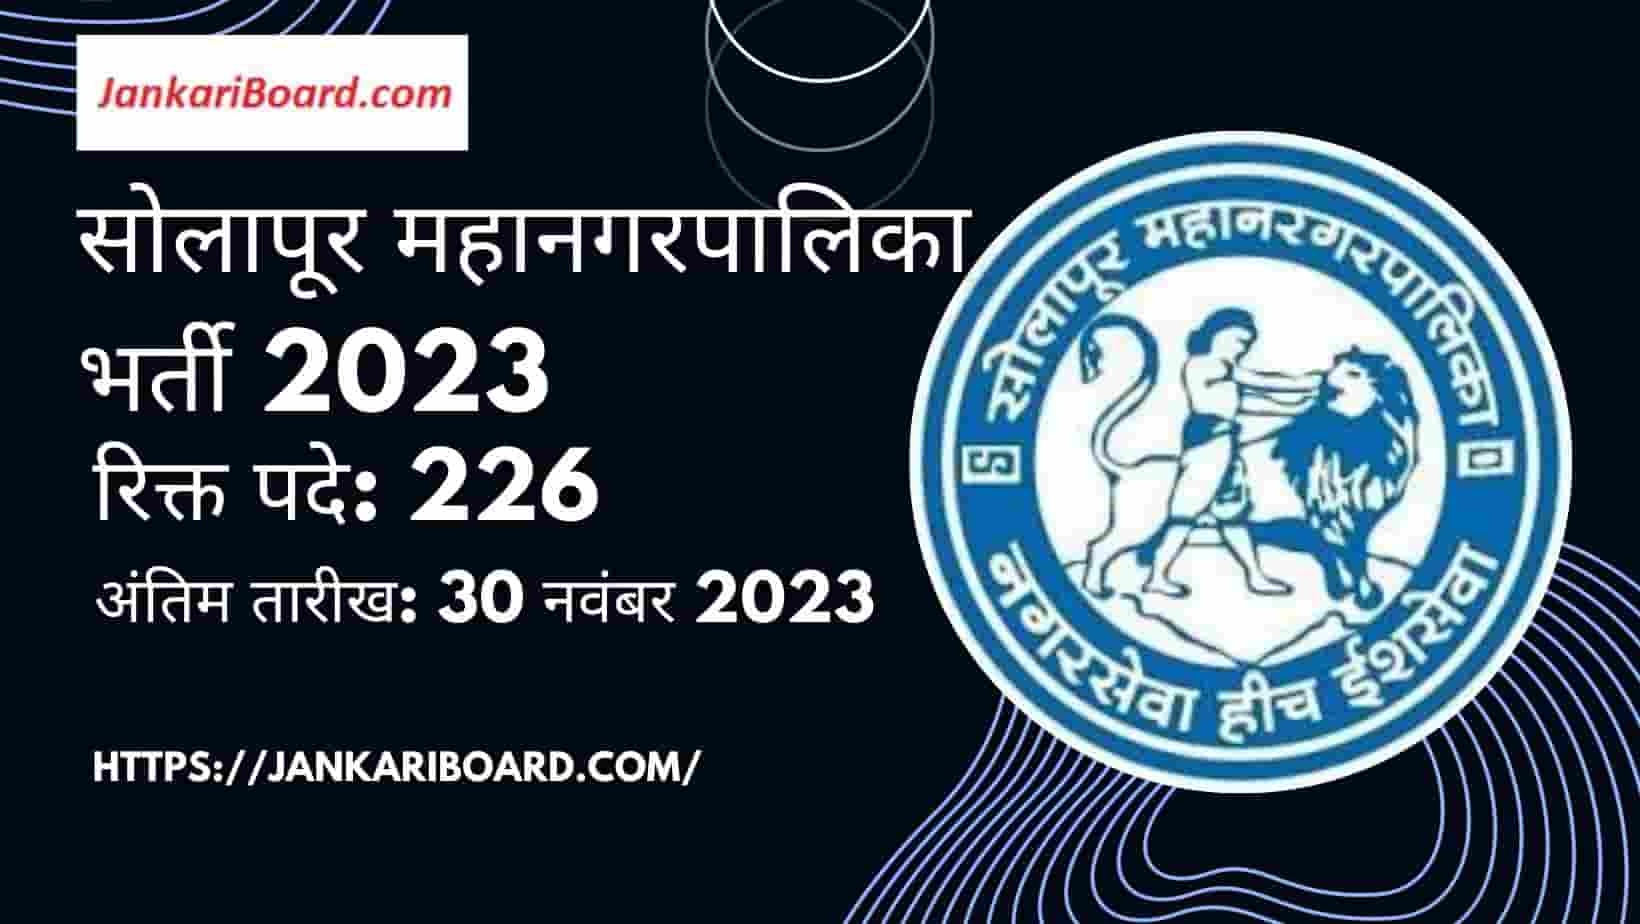 Solapur Mahanagarpalika Recruitment 2023